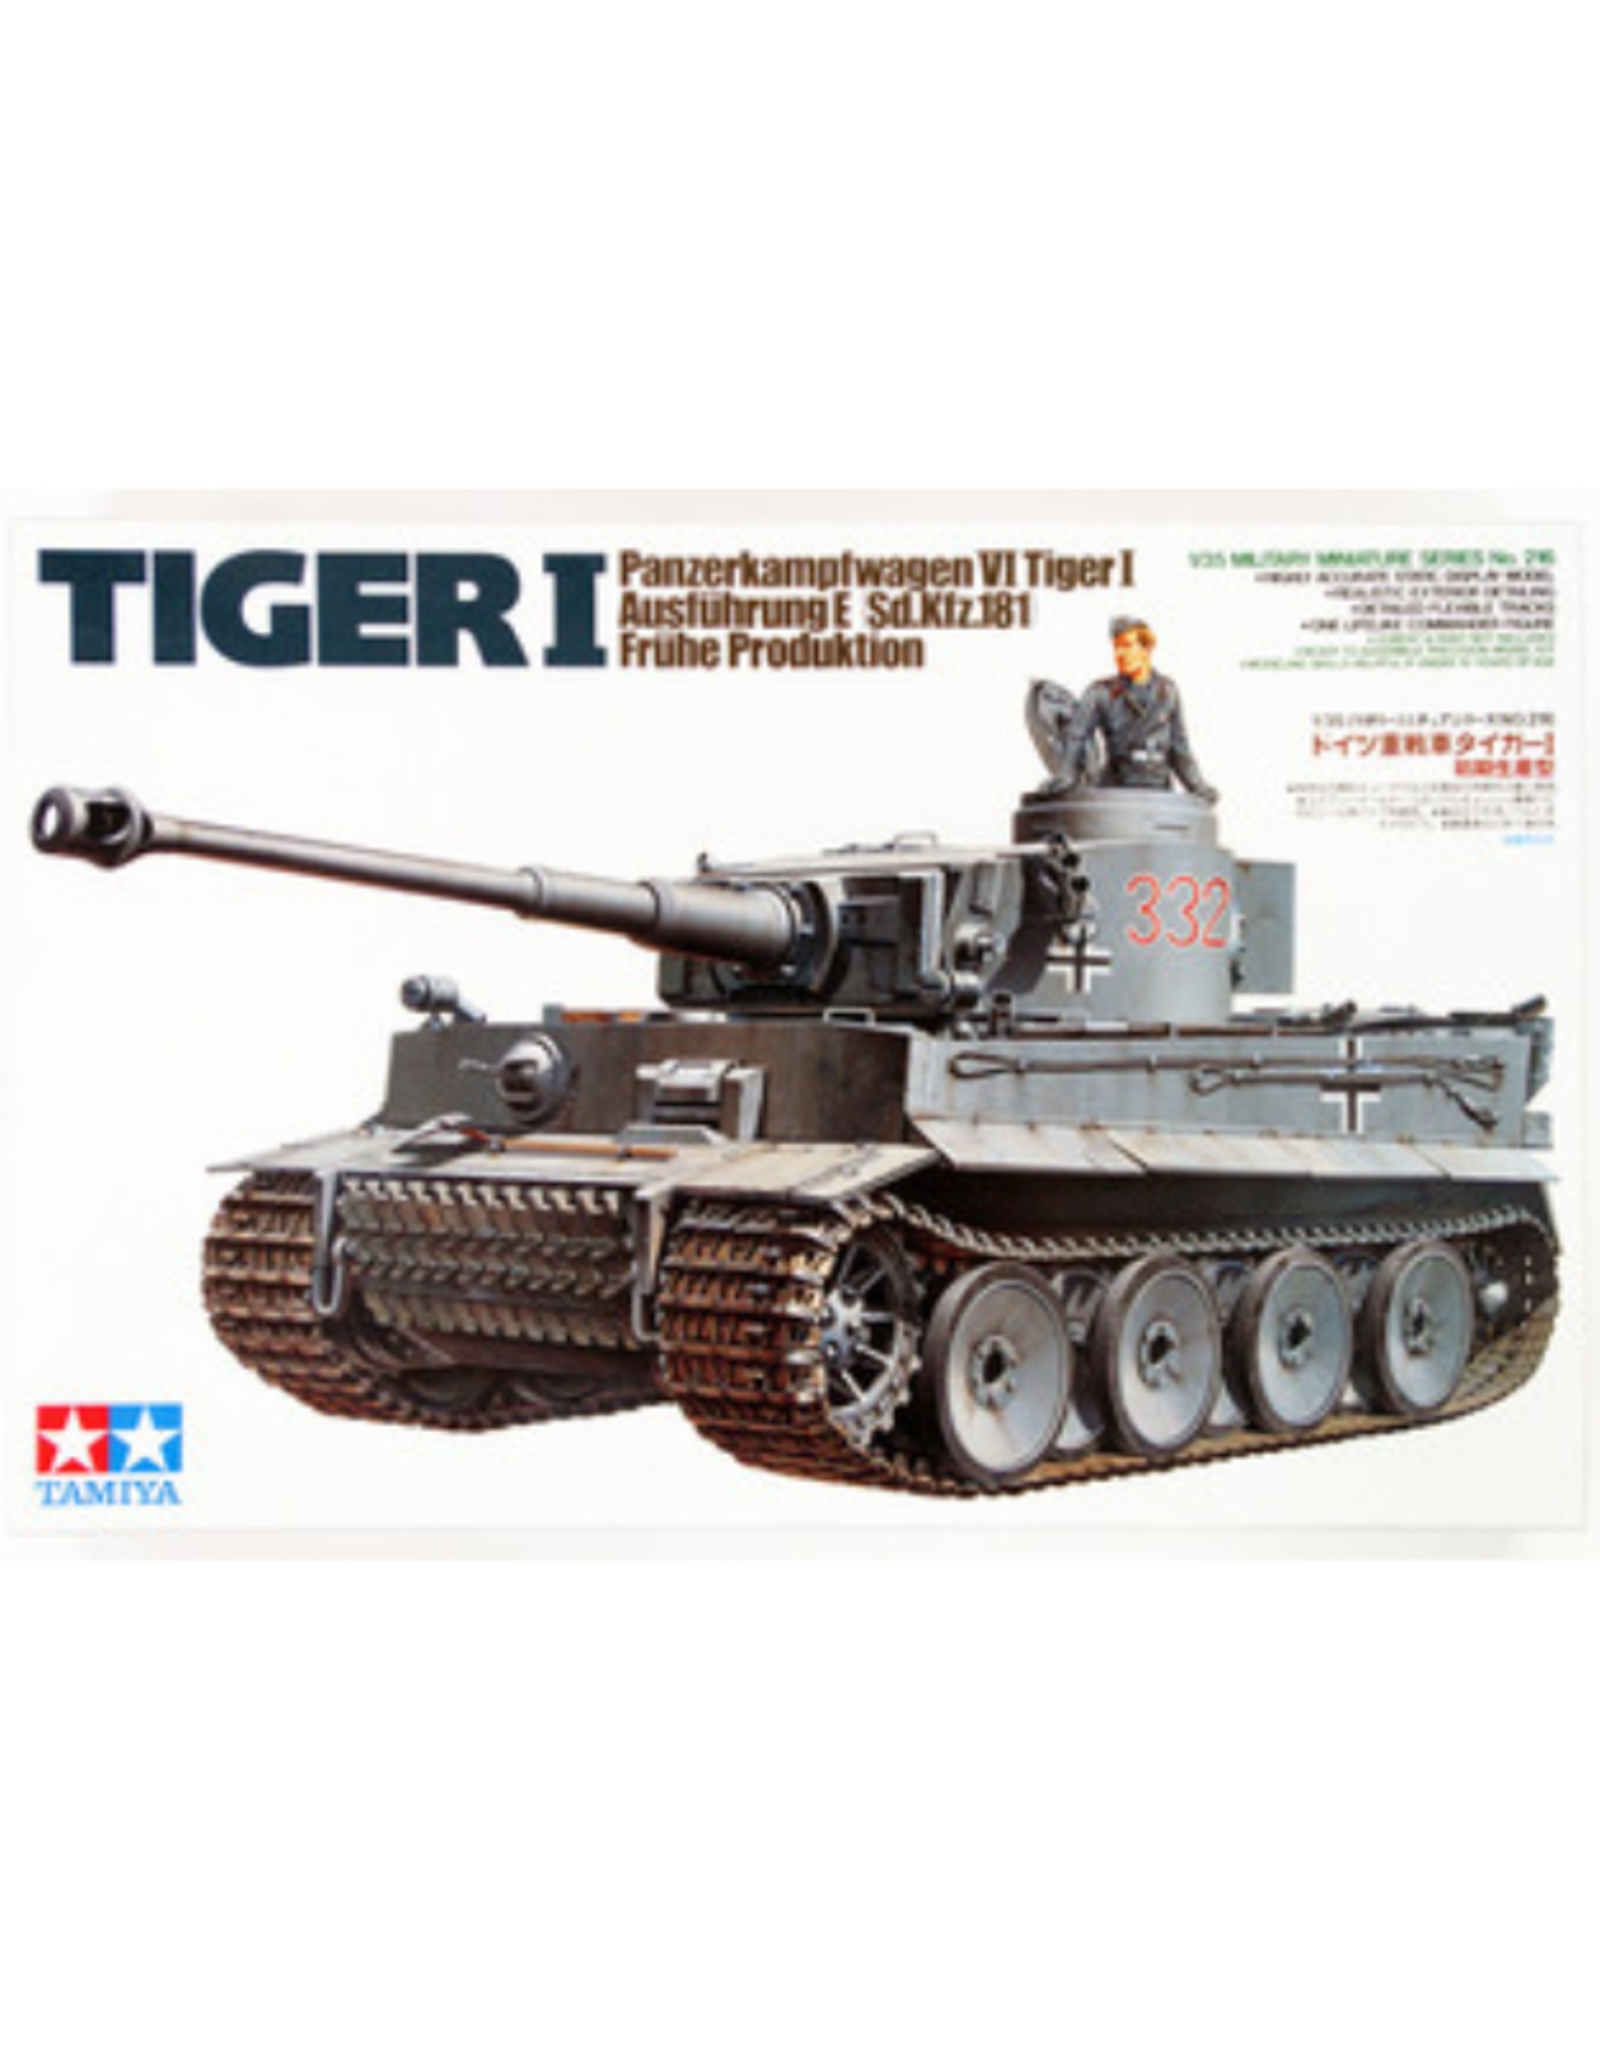 Tiger I (Early) Panzerkampfwagen VI Tiger I